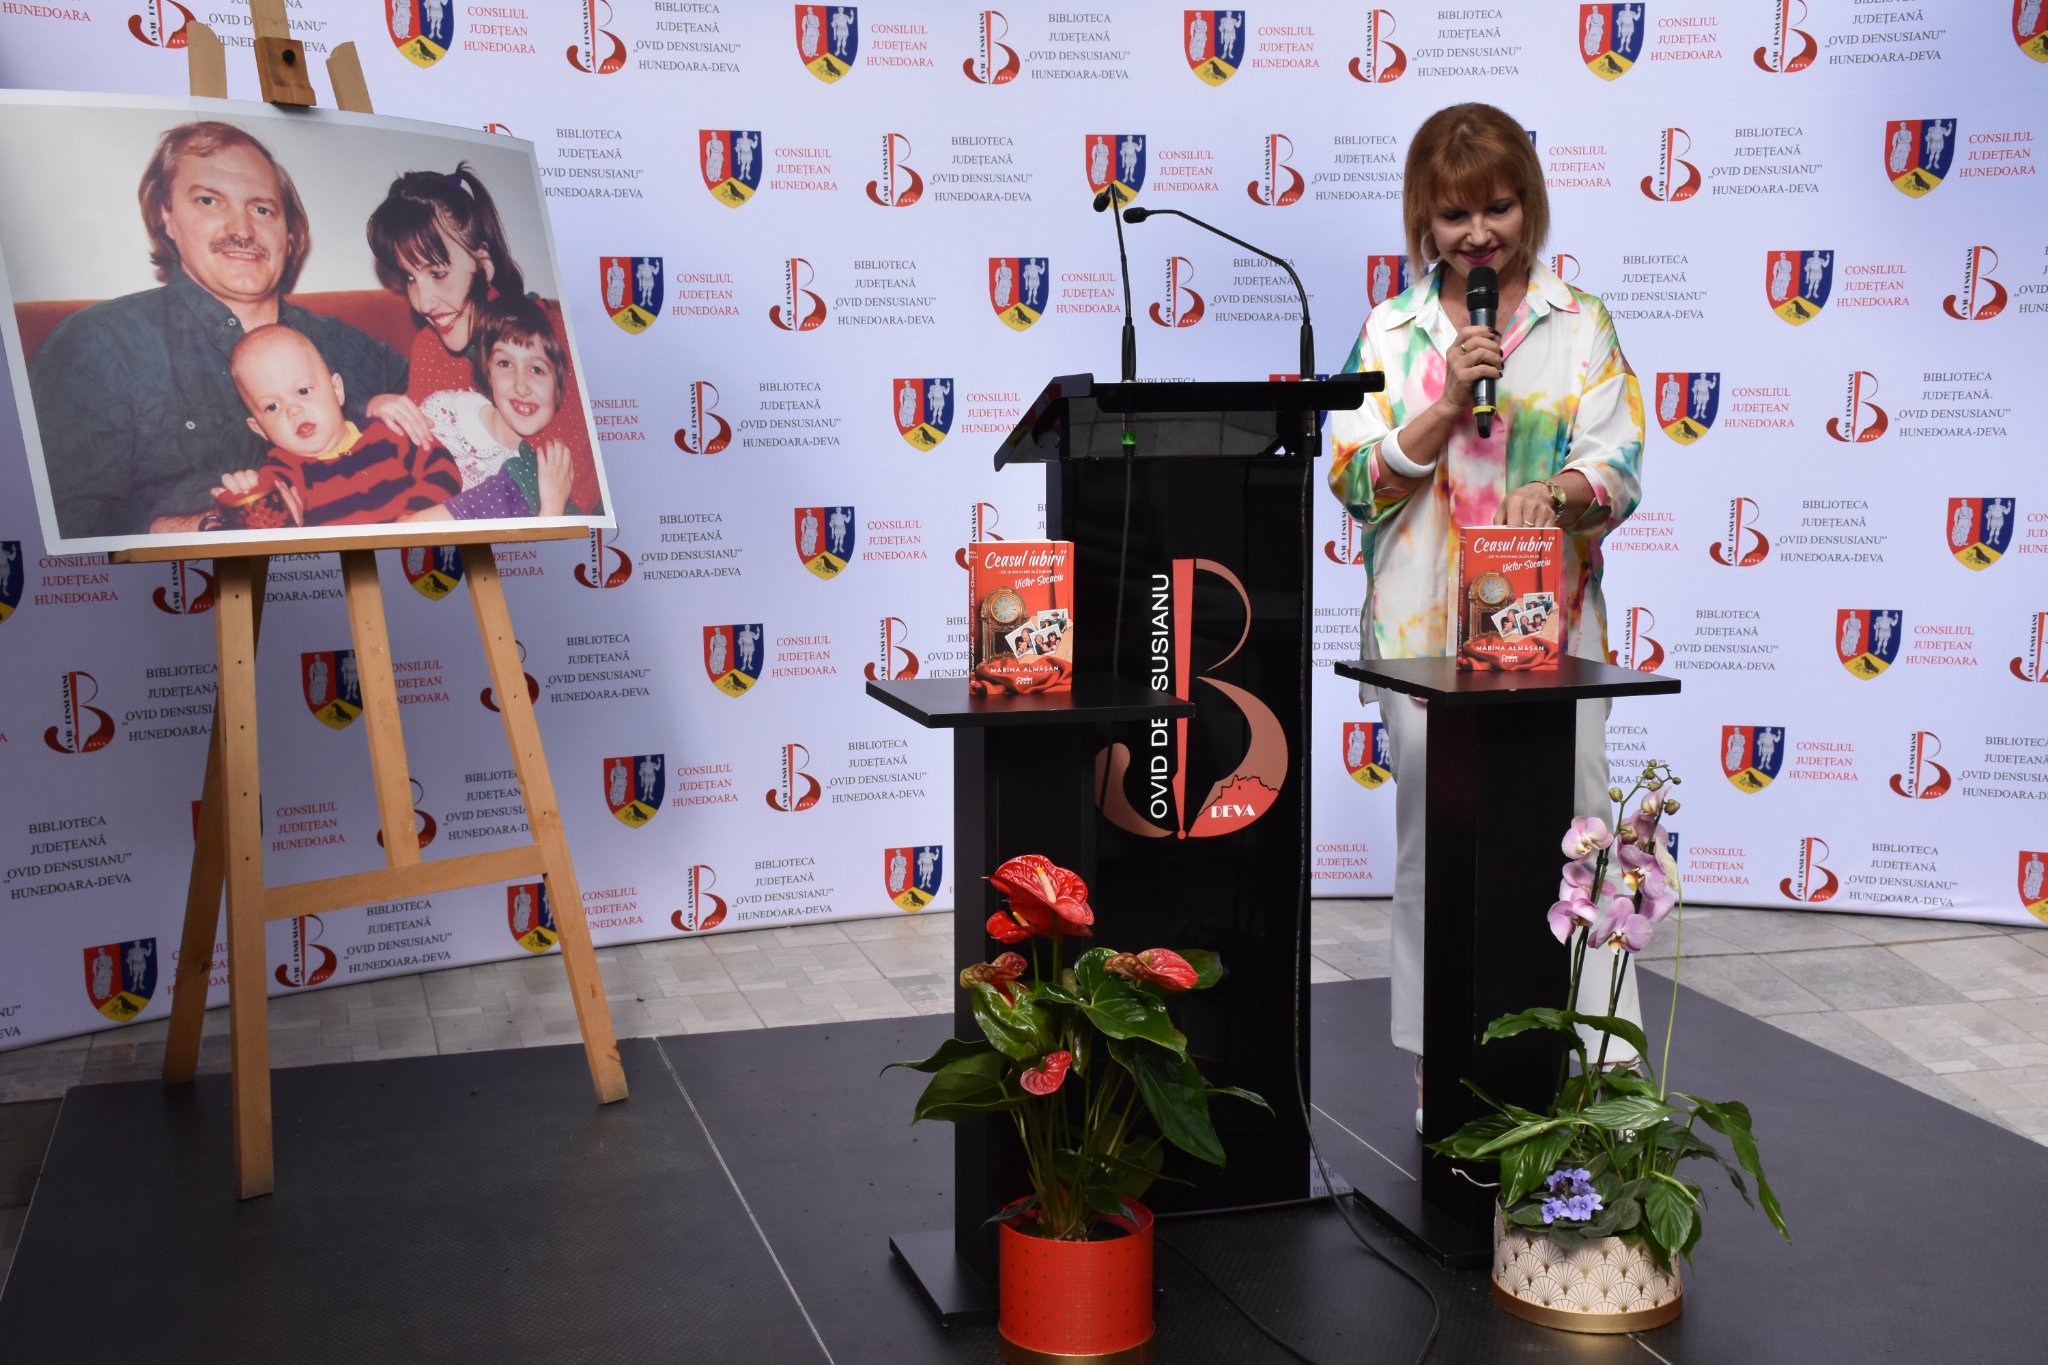 Cunoscuta jurnalistă și realizatoare de emisiuni TV Marina Almășan și-a lansat noua carte la Deva. Eveniment organizat de Biblioteca Județeană